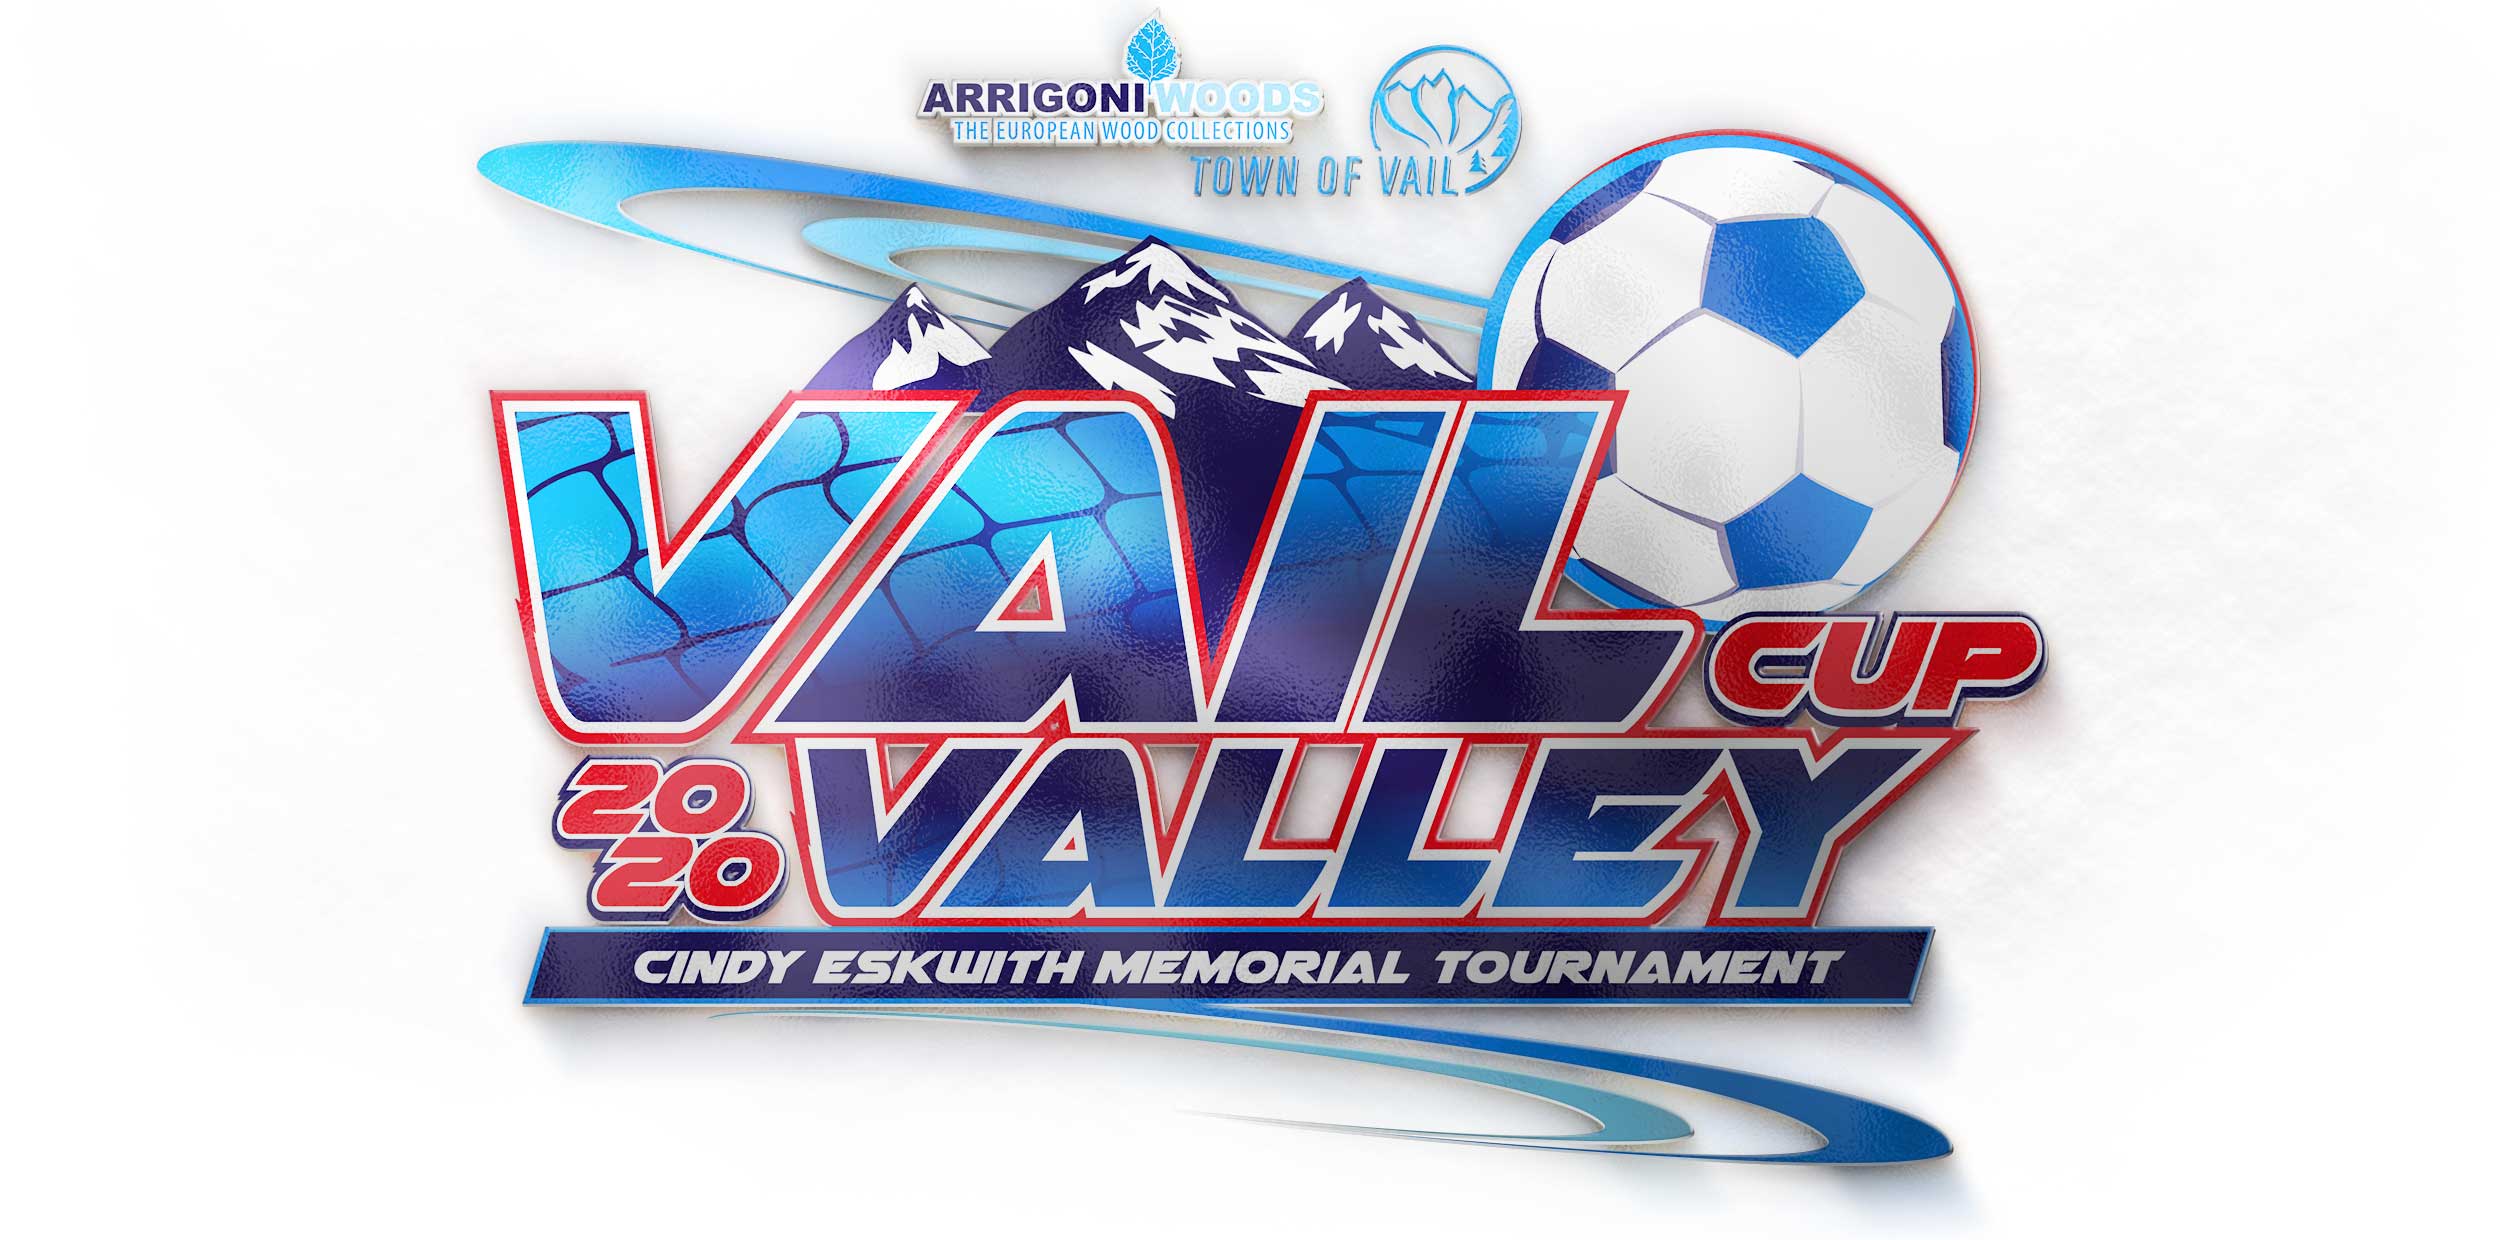 Vail-Valley-Cup-Fine-Designs-Apparel